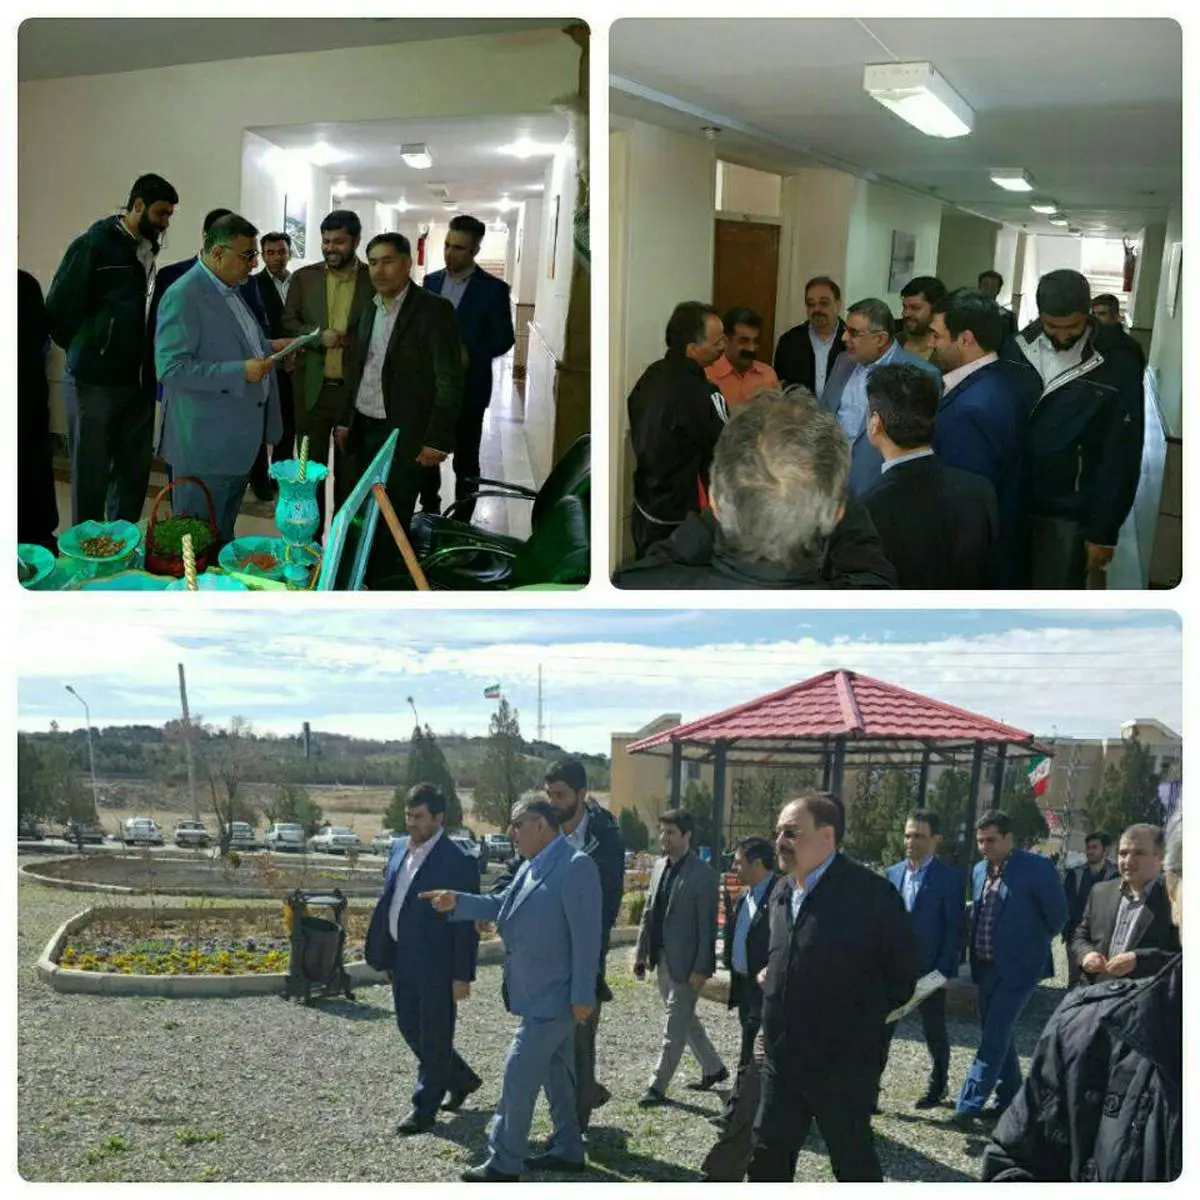 استقبال از مهمان نوروزی در ایستگاههای اطلاع رسانی منطقه22